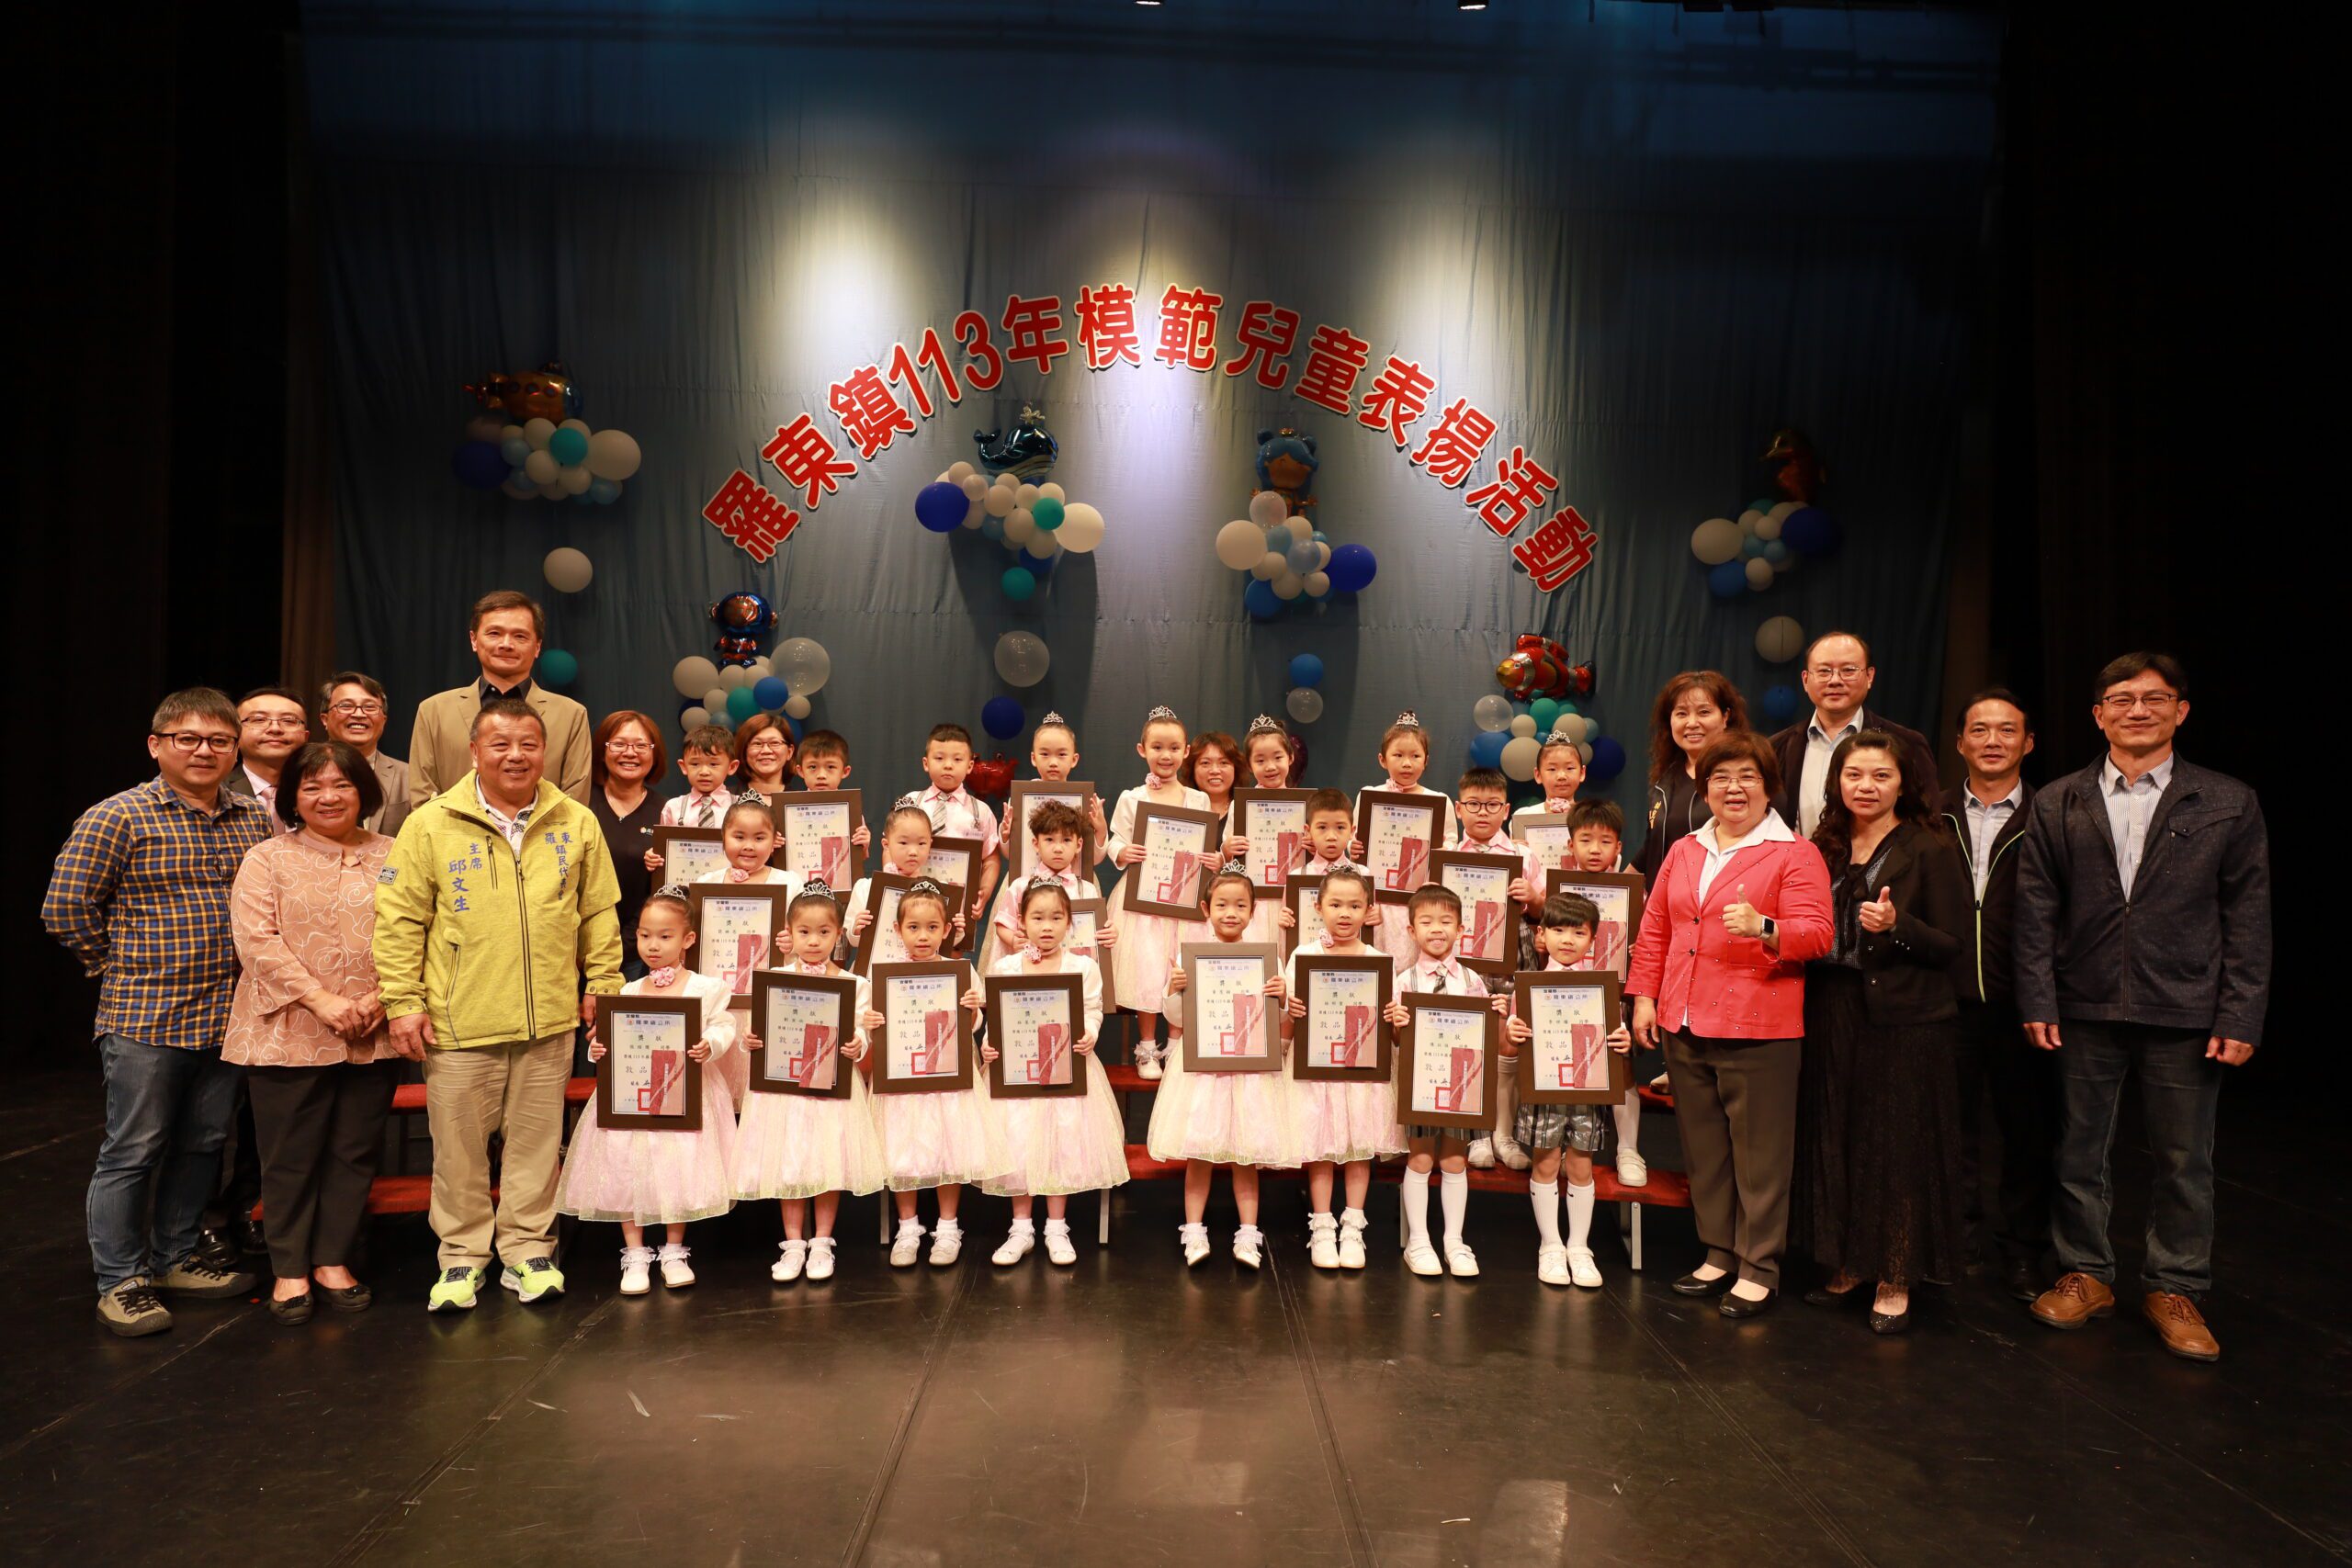 羅東鎮表揚模範兒童  255位學童獲表揚